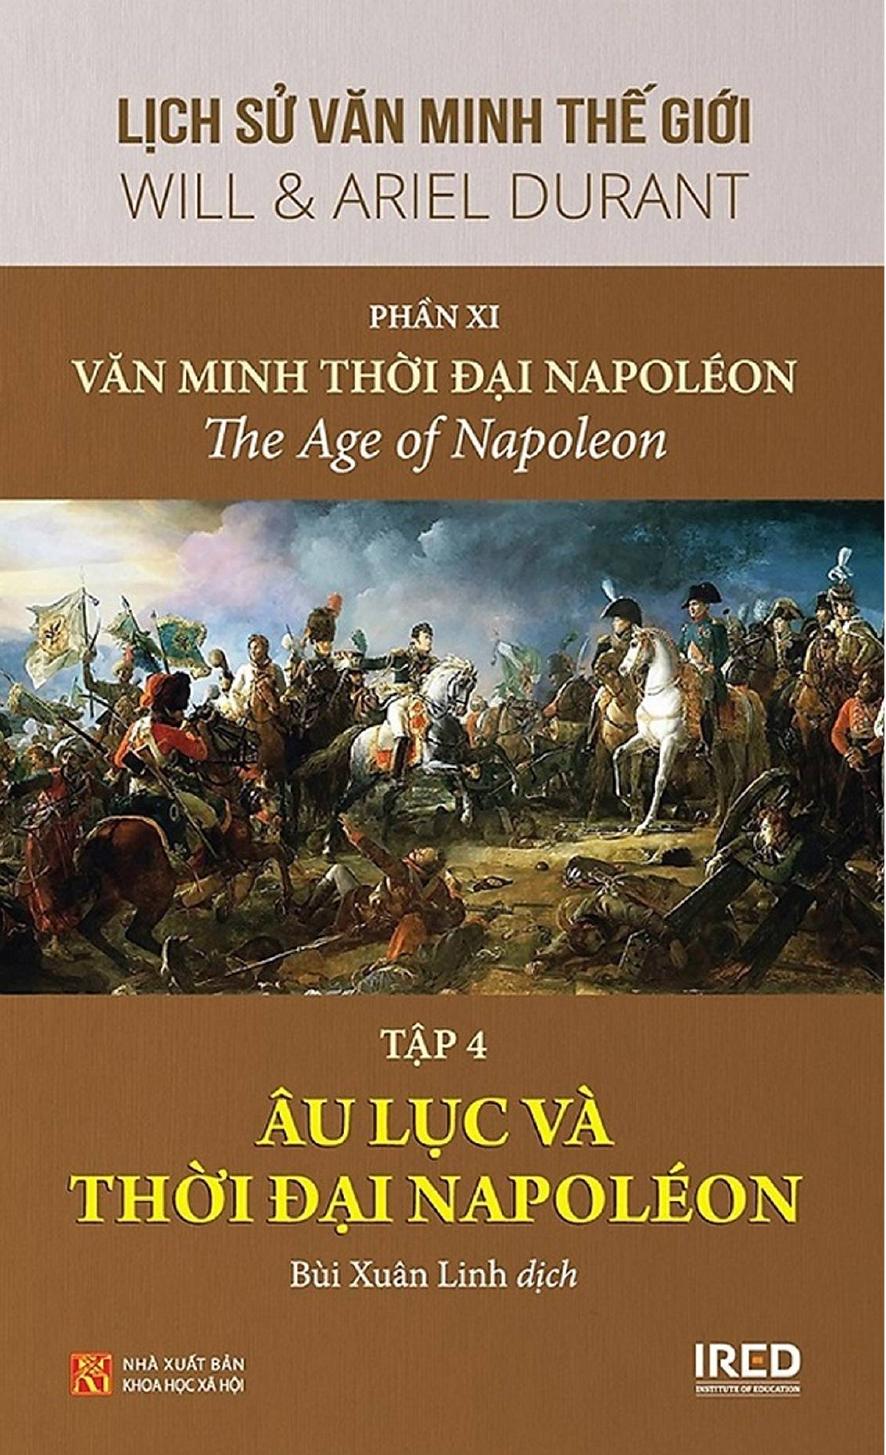 Lịch Sử Văn Minh Thế Giới Phần XI: Văn Minh Thời Đại Napoléon (tập 4)